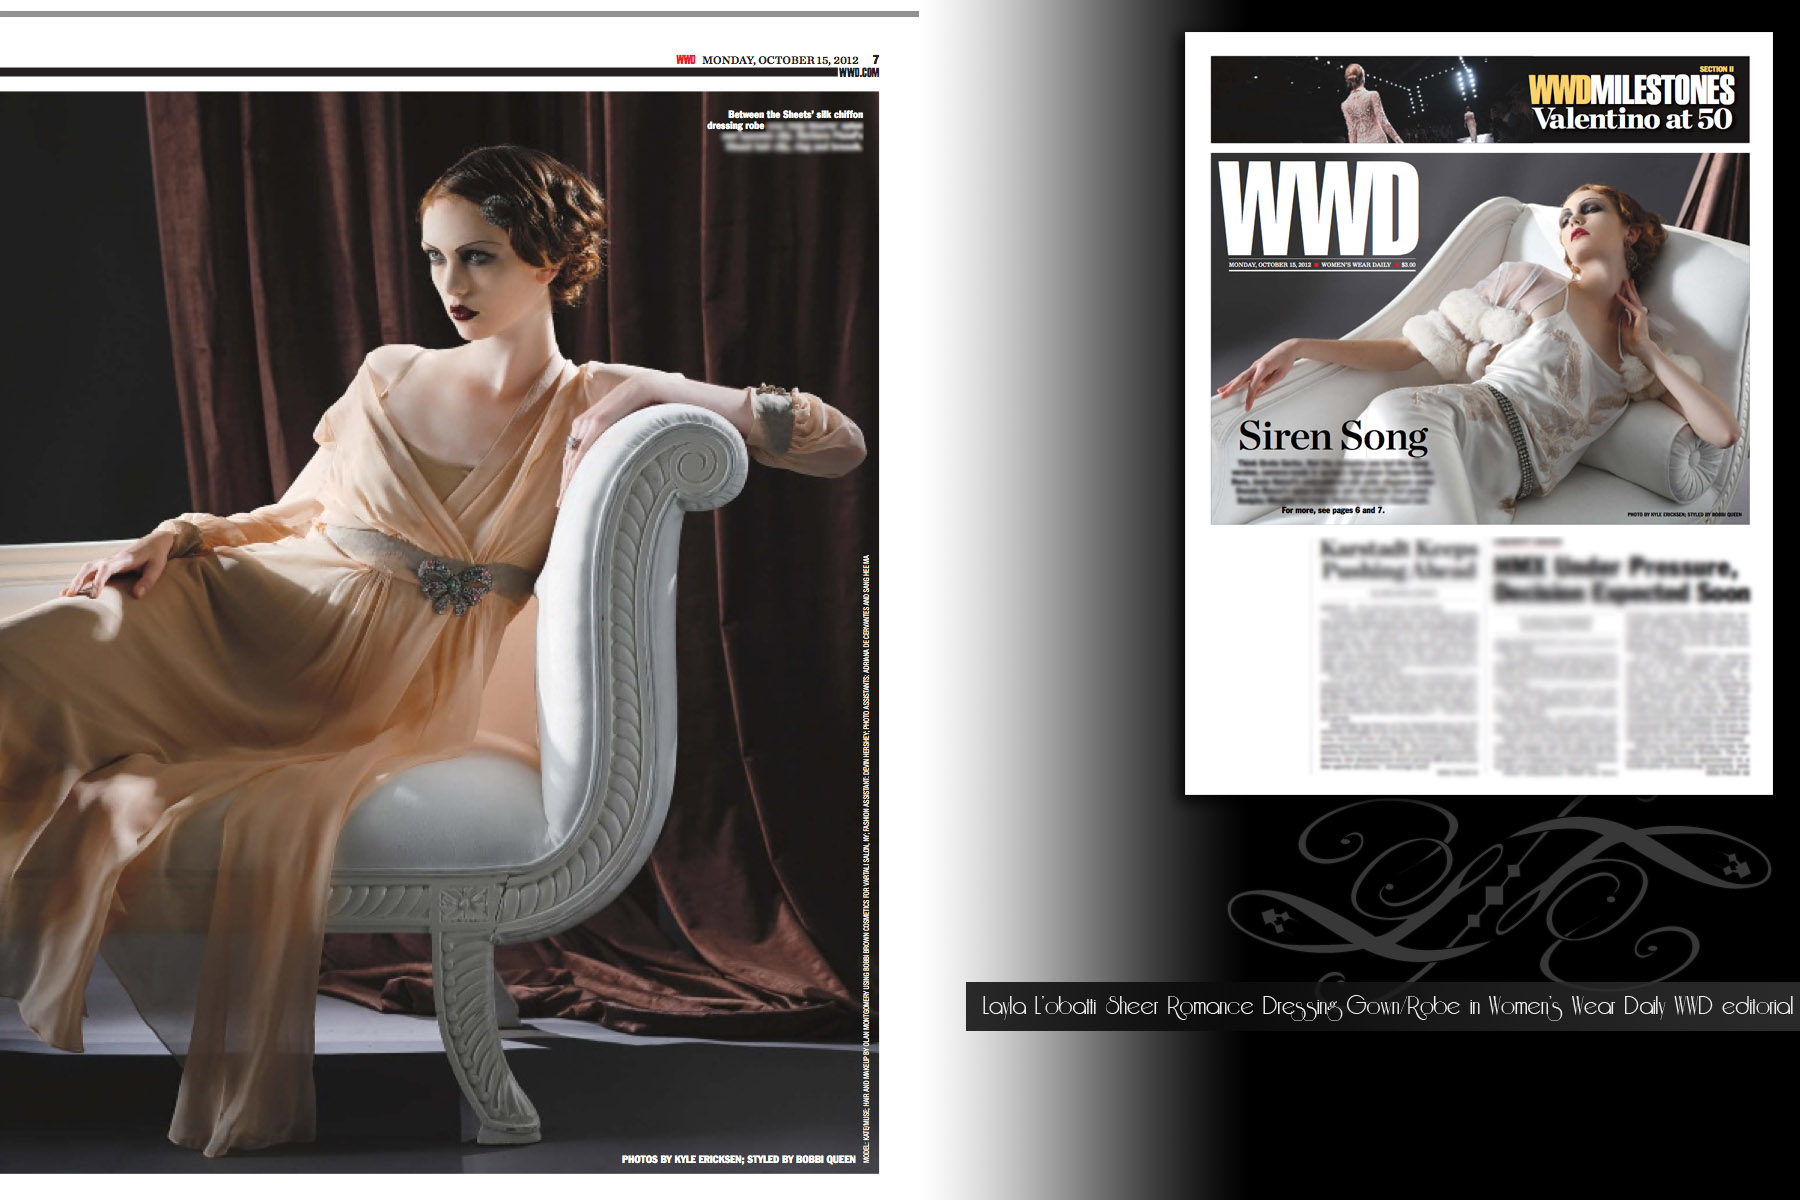 Layla Lobatti Between the Sheets Designer - Sheer Romance dressing gown in WWD Women's wear daily